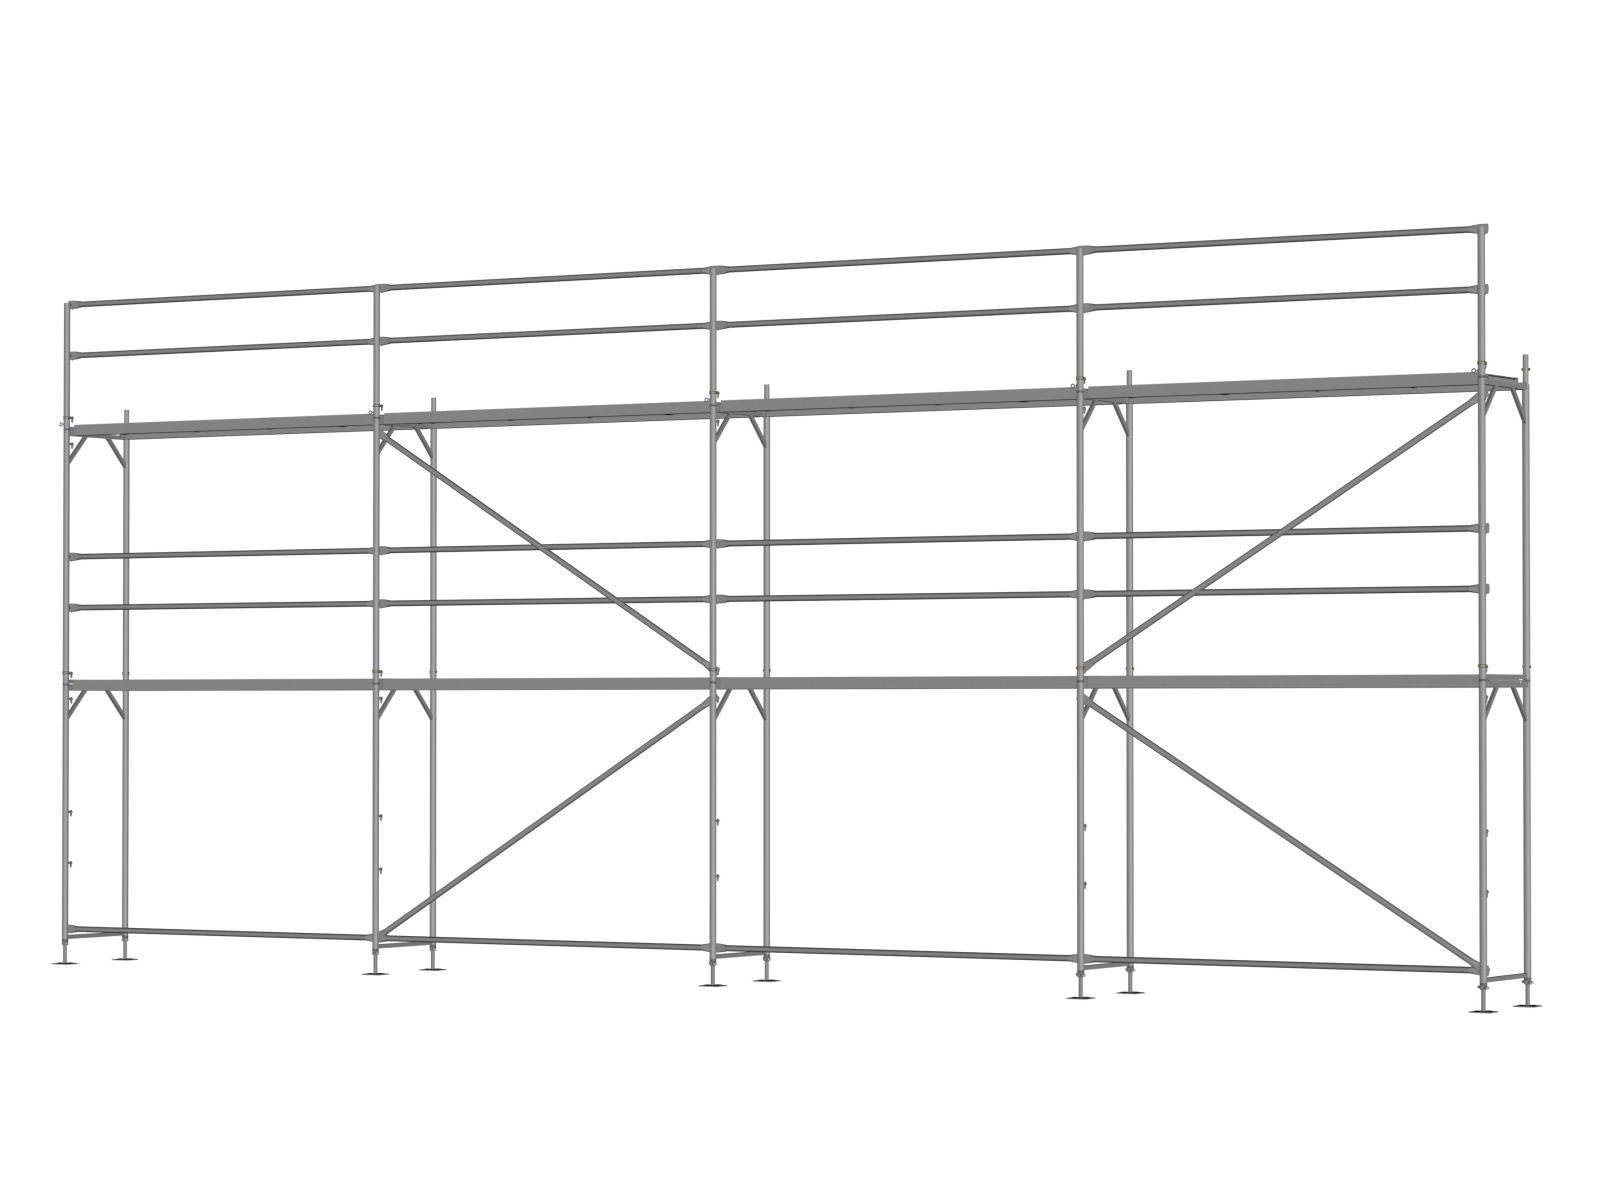 Stahl Traufseitengerüst 72 m², Feldlänge 3,0 m - Basis-Gerüst